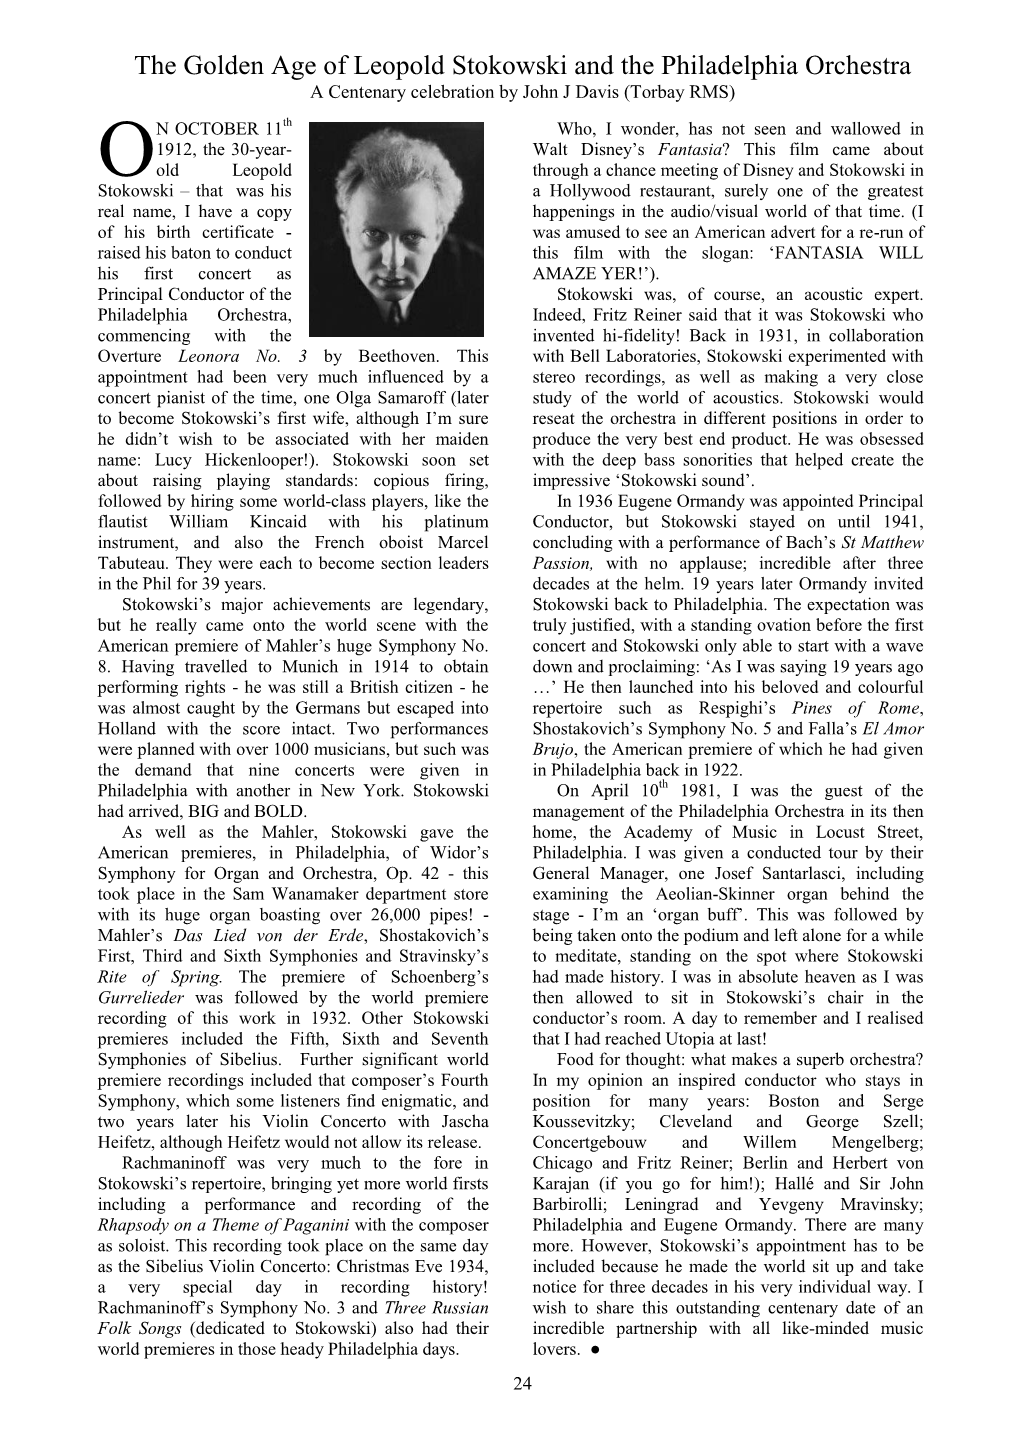 The Golden Age of Leopold Stokowski and the Philadelphia Orchestra a Centenary Celebration by John J Davis (Torbay RMS)